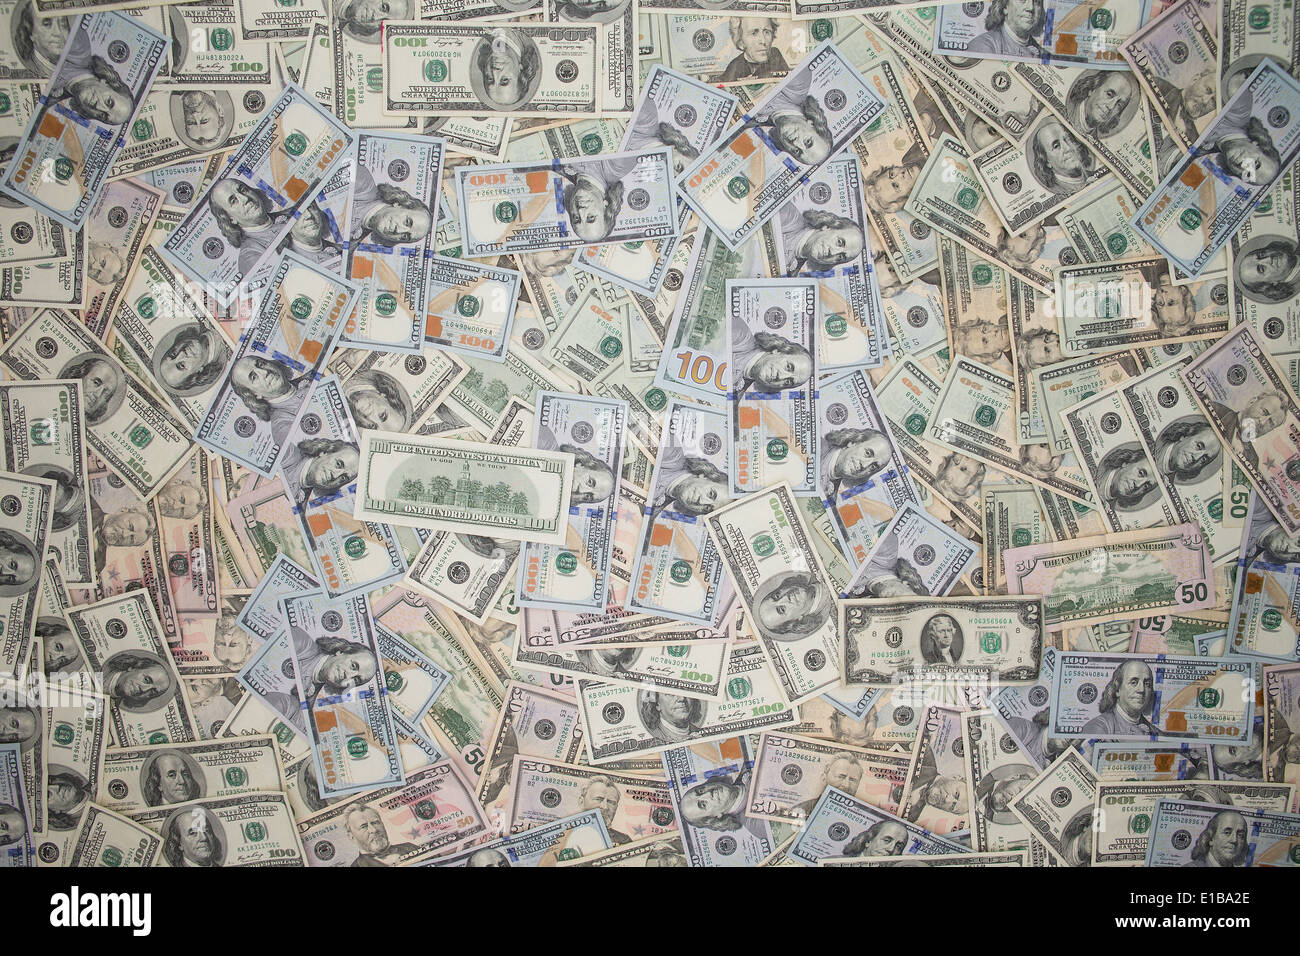 Plusieurs billets de 100 dollars américains dispersés dans la couverture plein cadre avec le coin de vignettage (vue de dessus dans un cadre conceptuel Banque D'Images